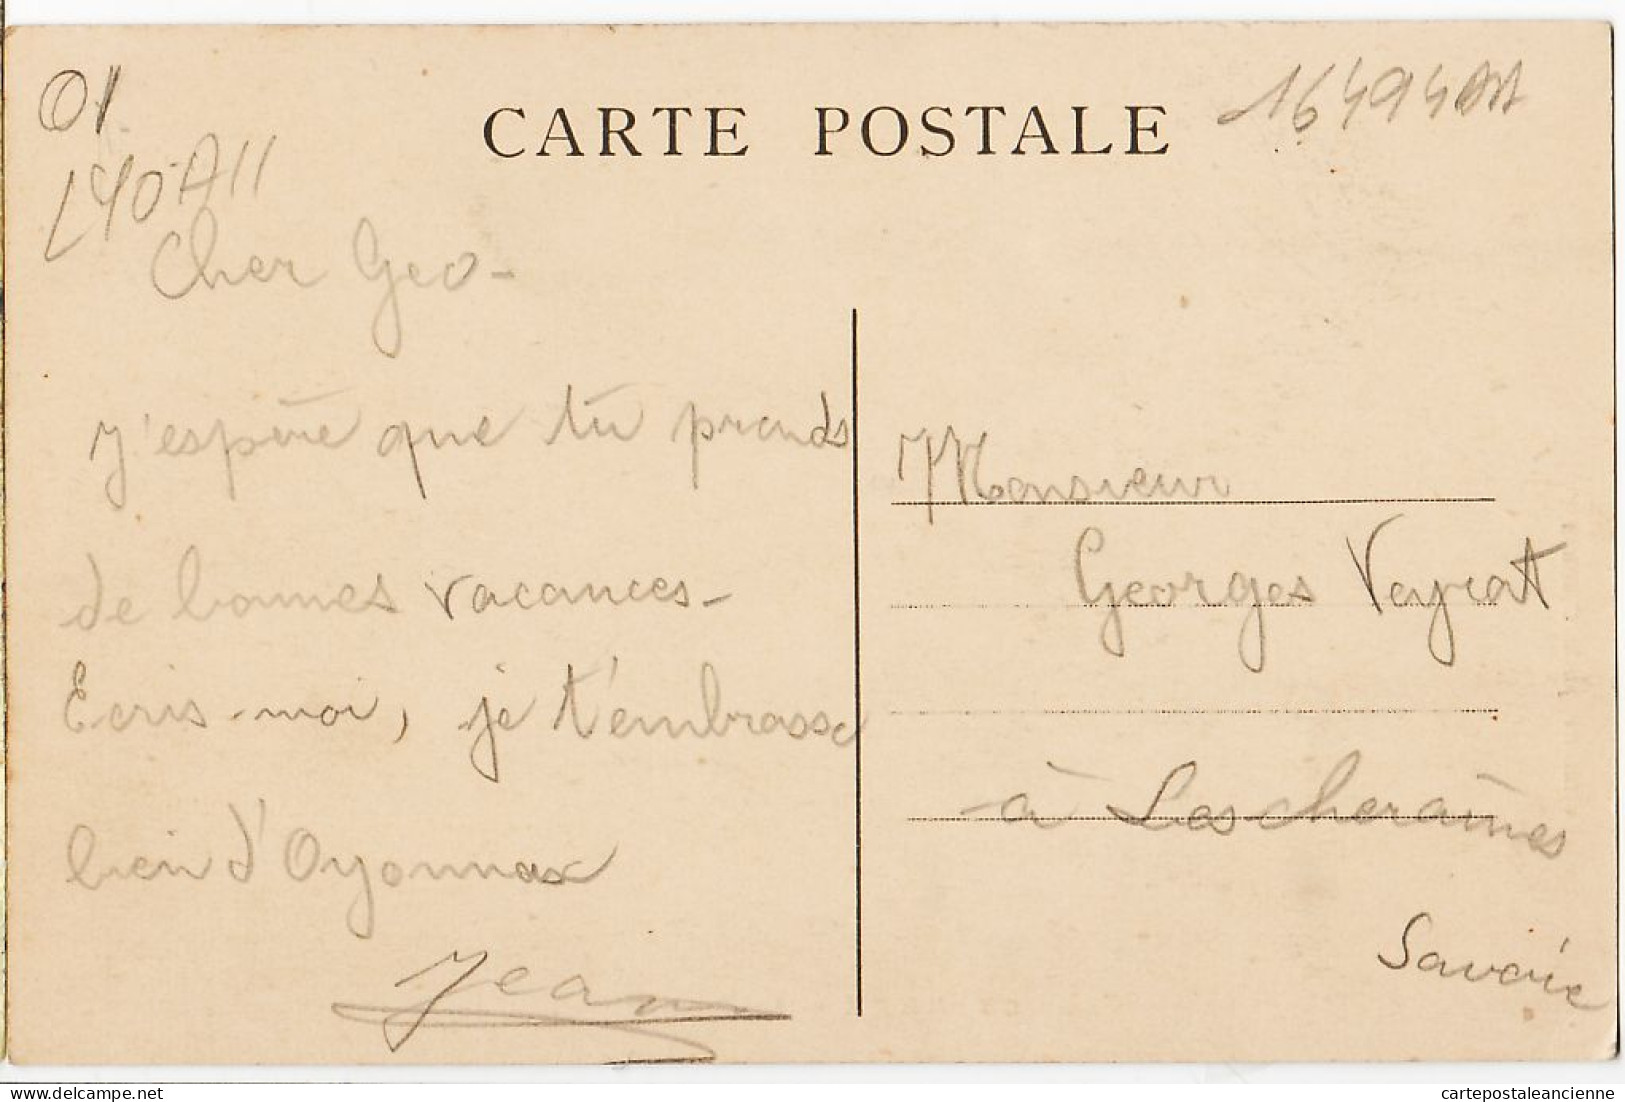 14551 / OYONNAX Ain Le PARC Kiosque à Musique 1930s à Georges VEYRAT Lescheraines Savoie- GAUTHIER Photo - Oyonnax